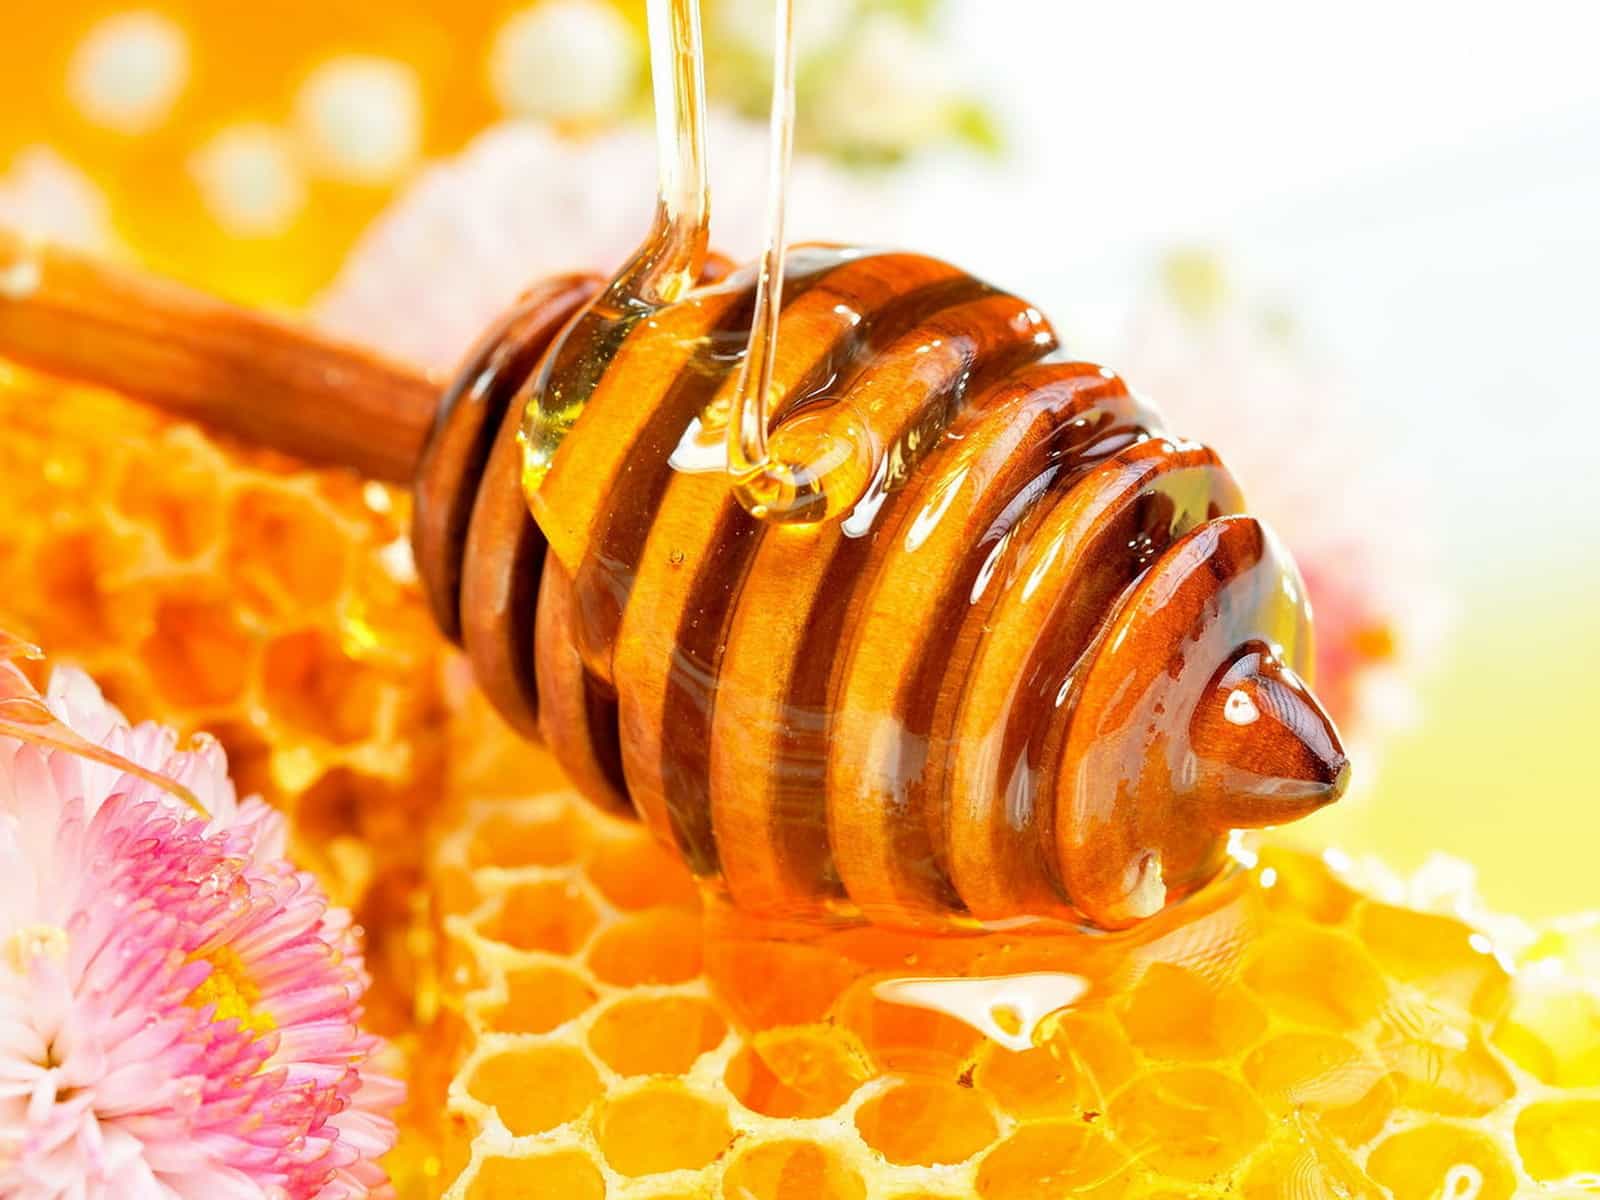 العسل في العراق؛ طبيعي 3 نكهات (البسط البرتقال الطبيعي الاربعين نوع)